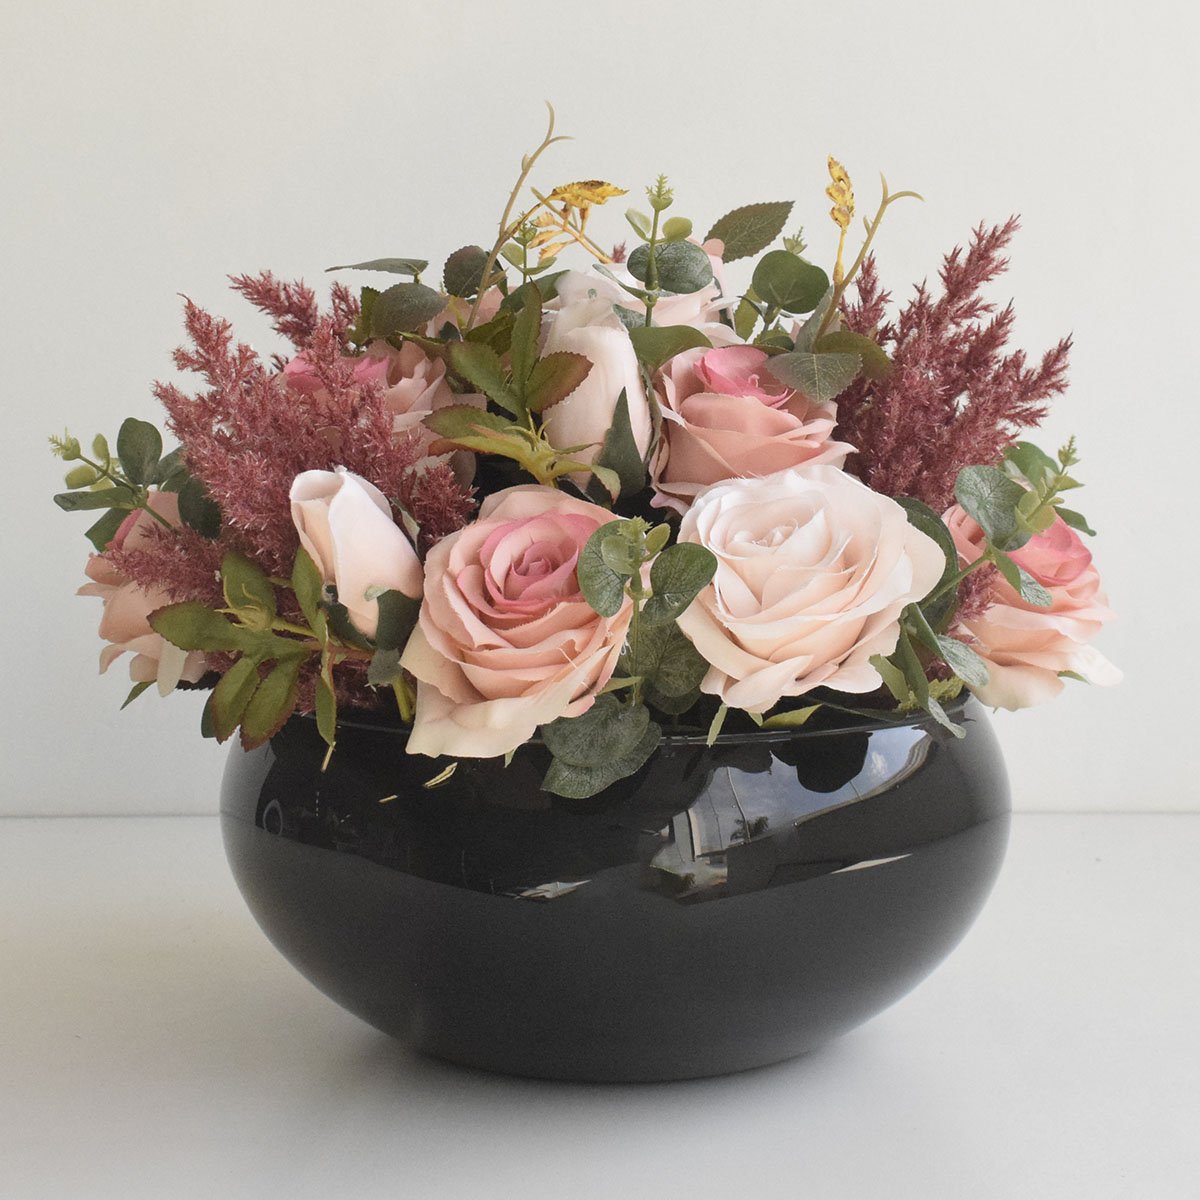 Arranjo de Rosas Rosa e Flores Envelhecidas no Vaso de Vidro Preto |linha Permanente Formosinha - 2